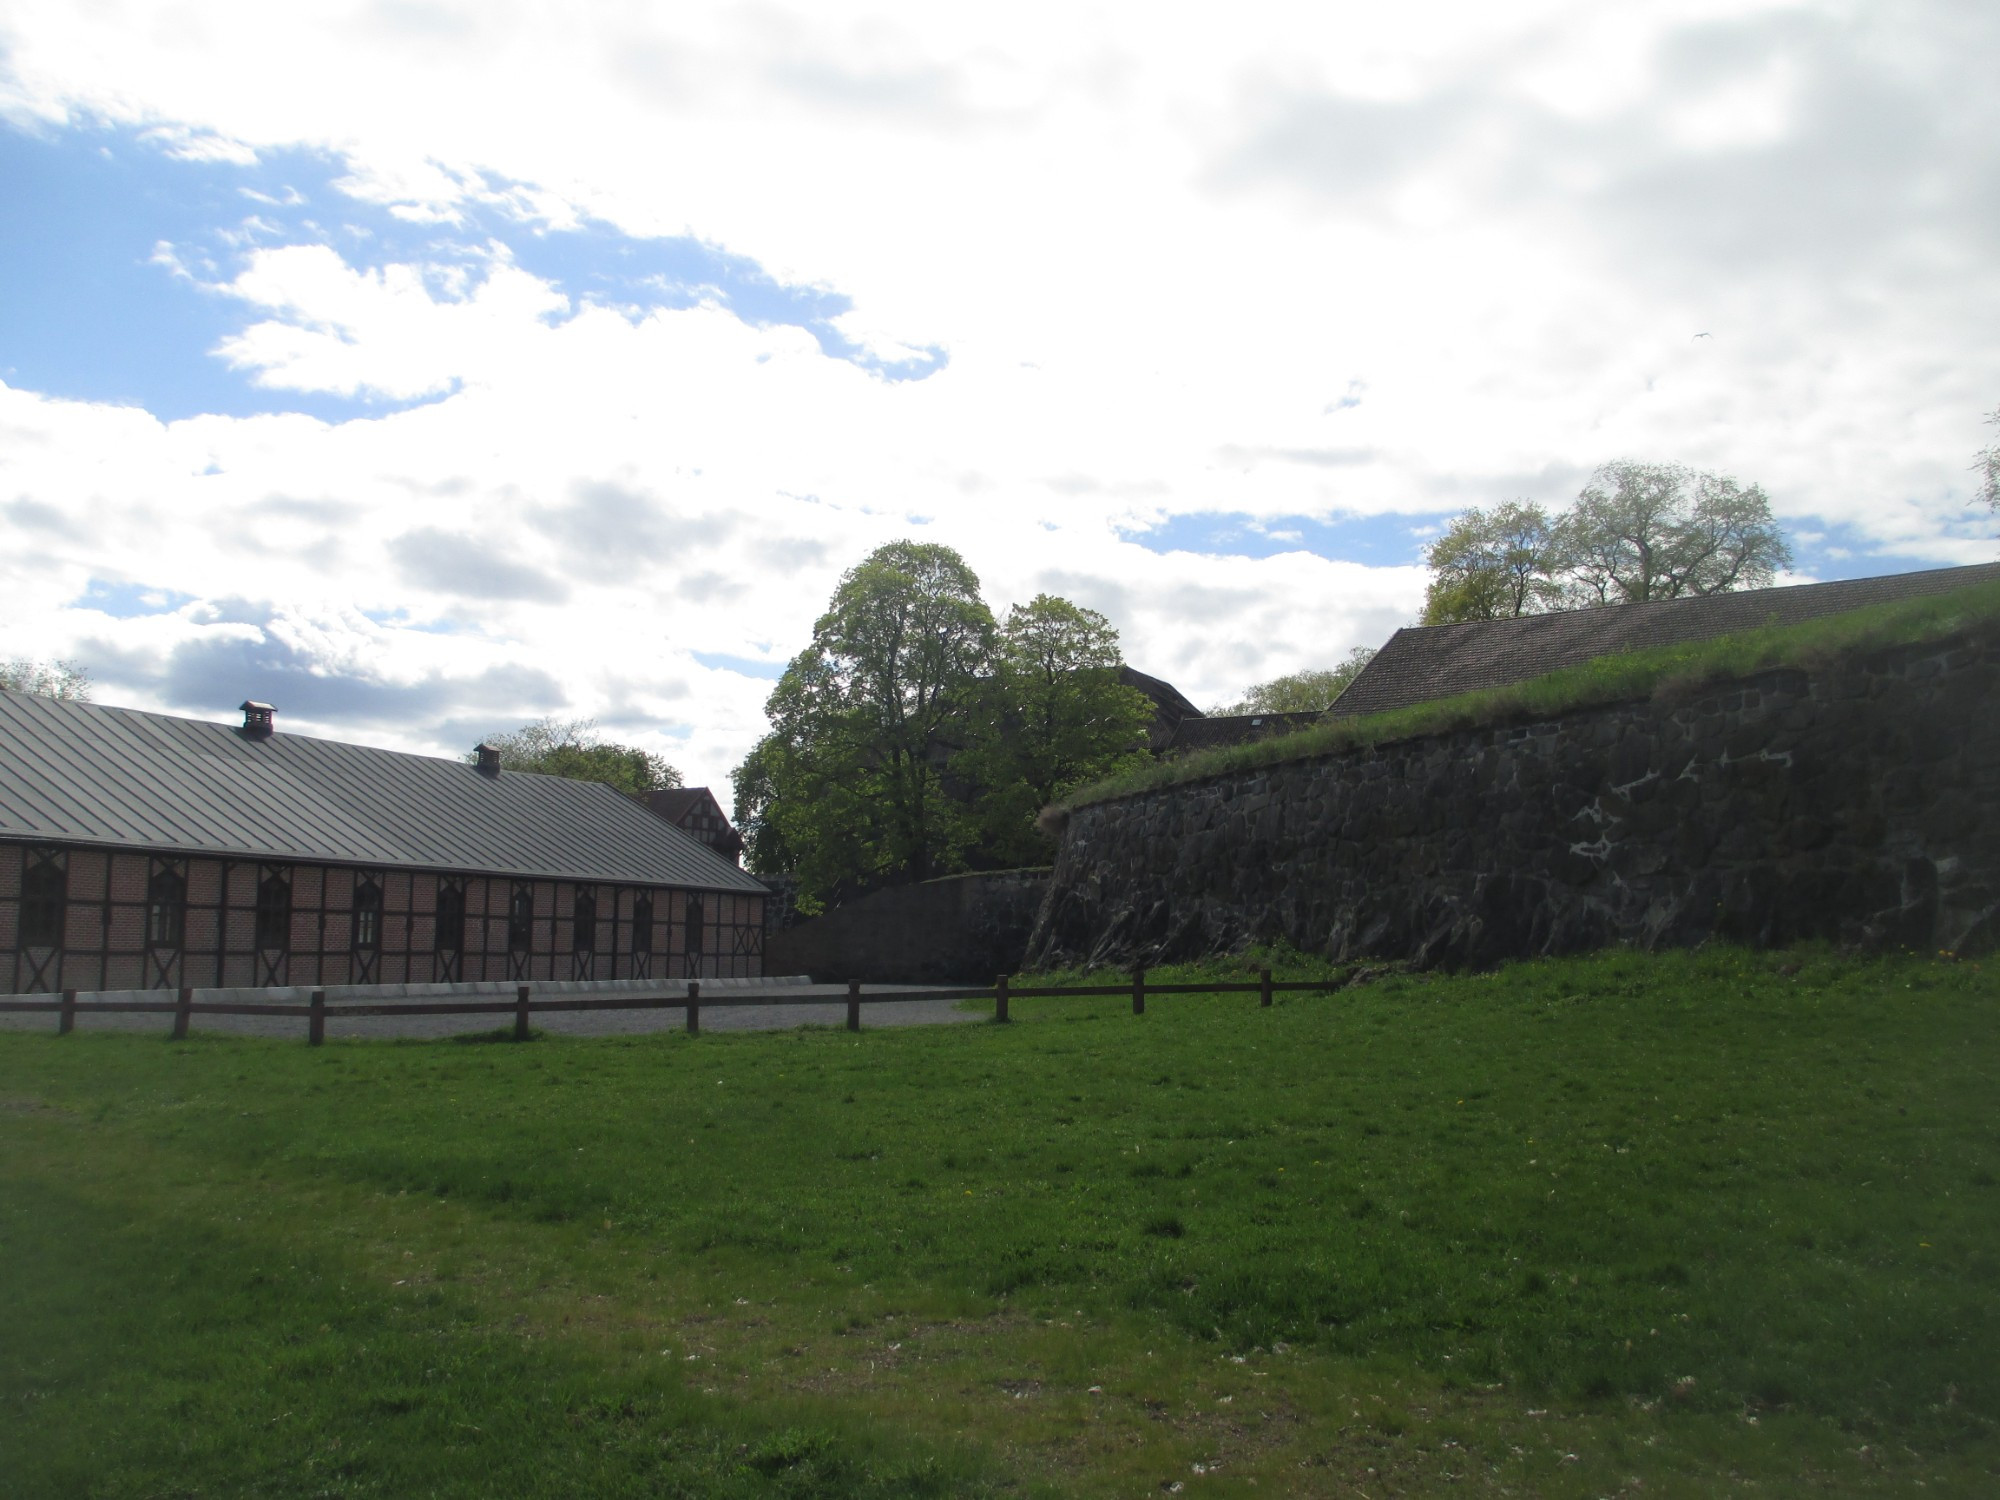 Осло. В крепости Акерсхус. (03.05.2015)